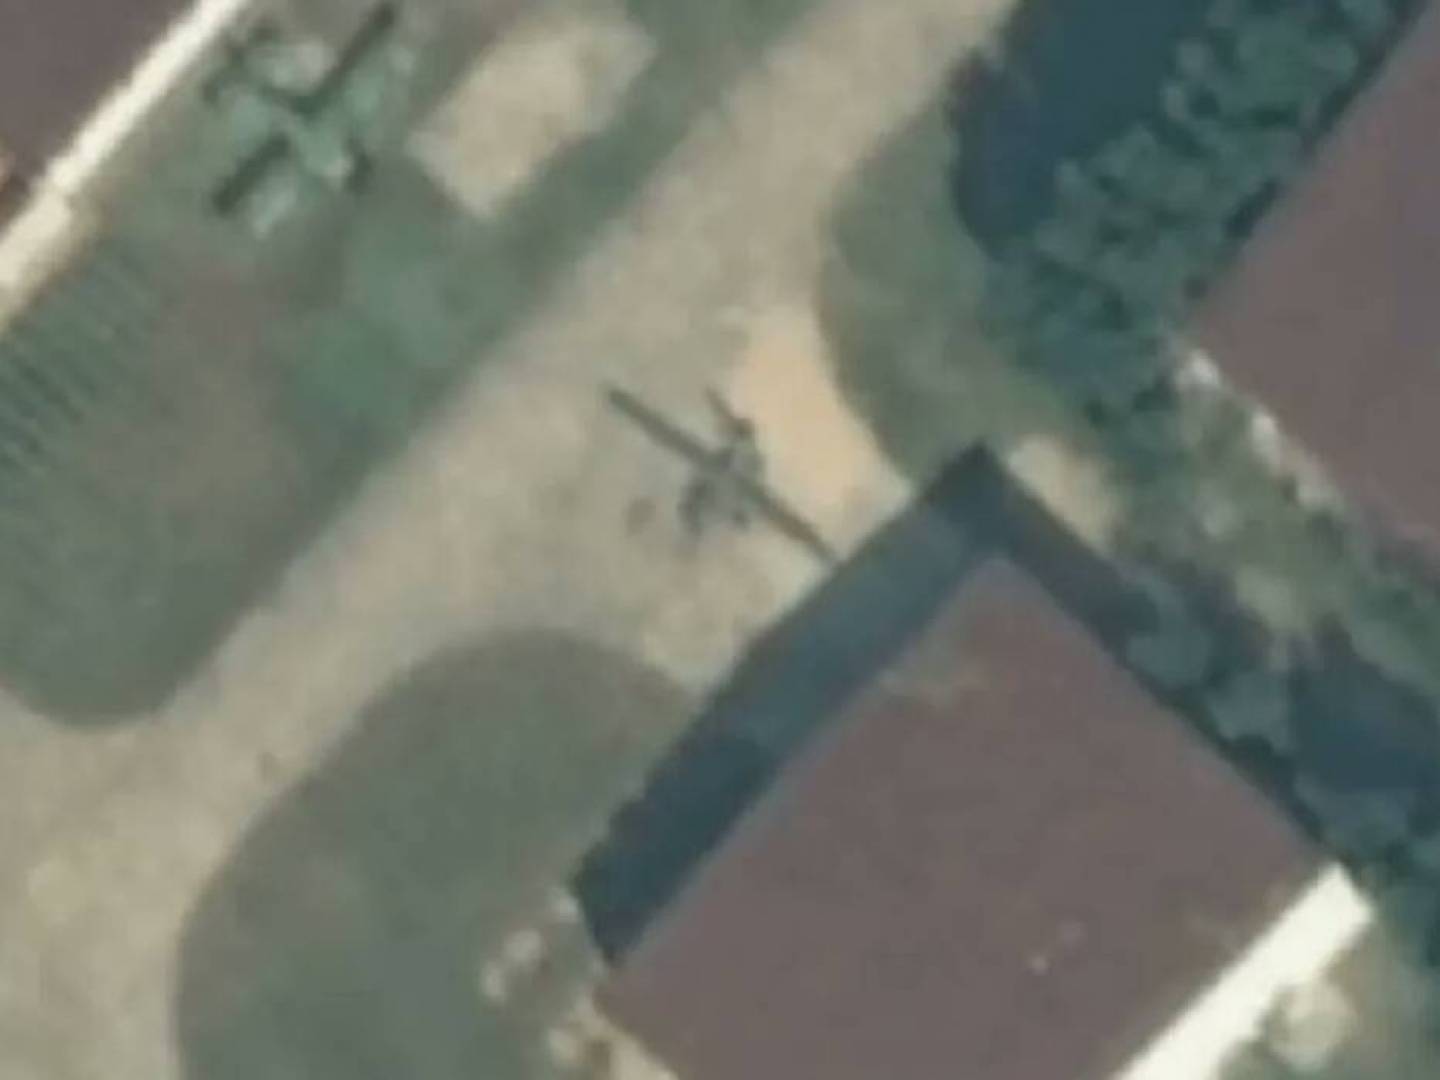 رصد طائرة مسيرة غامضة في سماء كوريا الشمالية